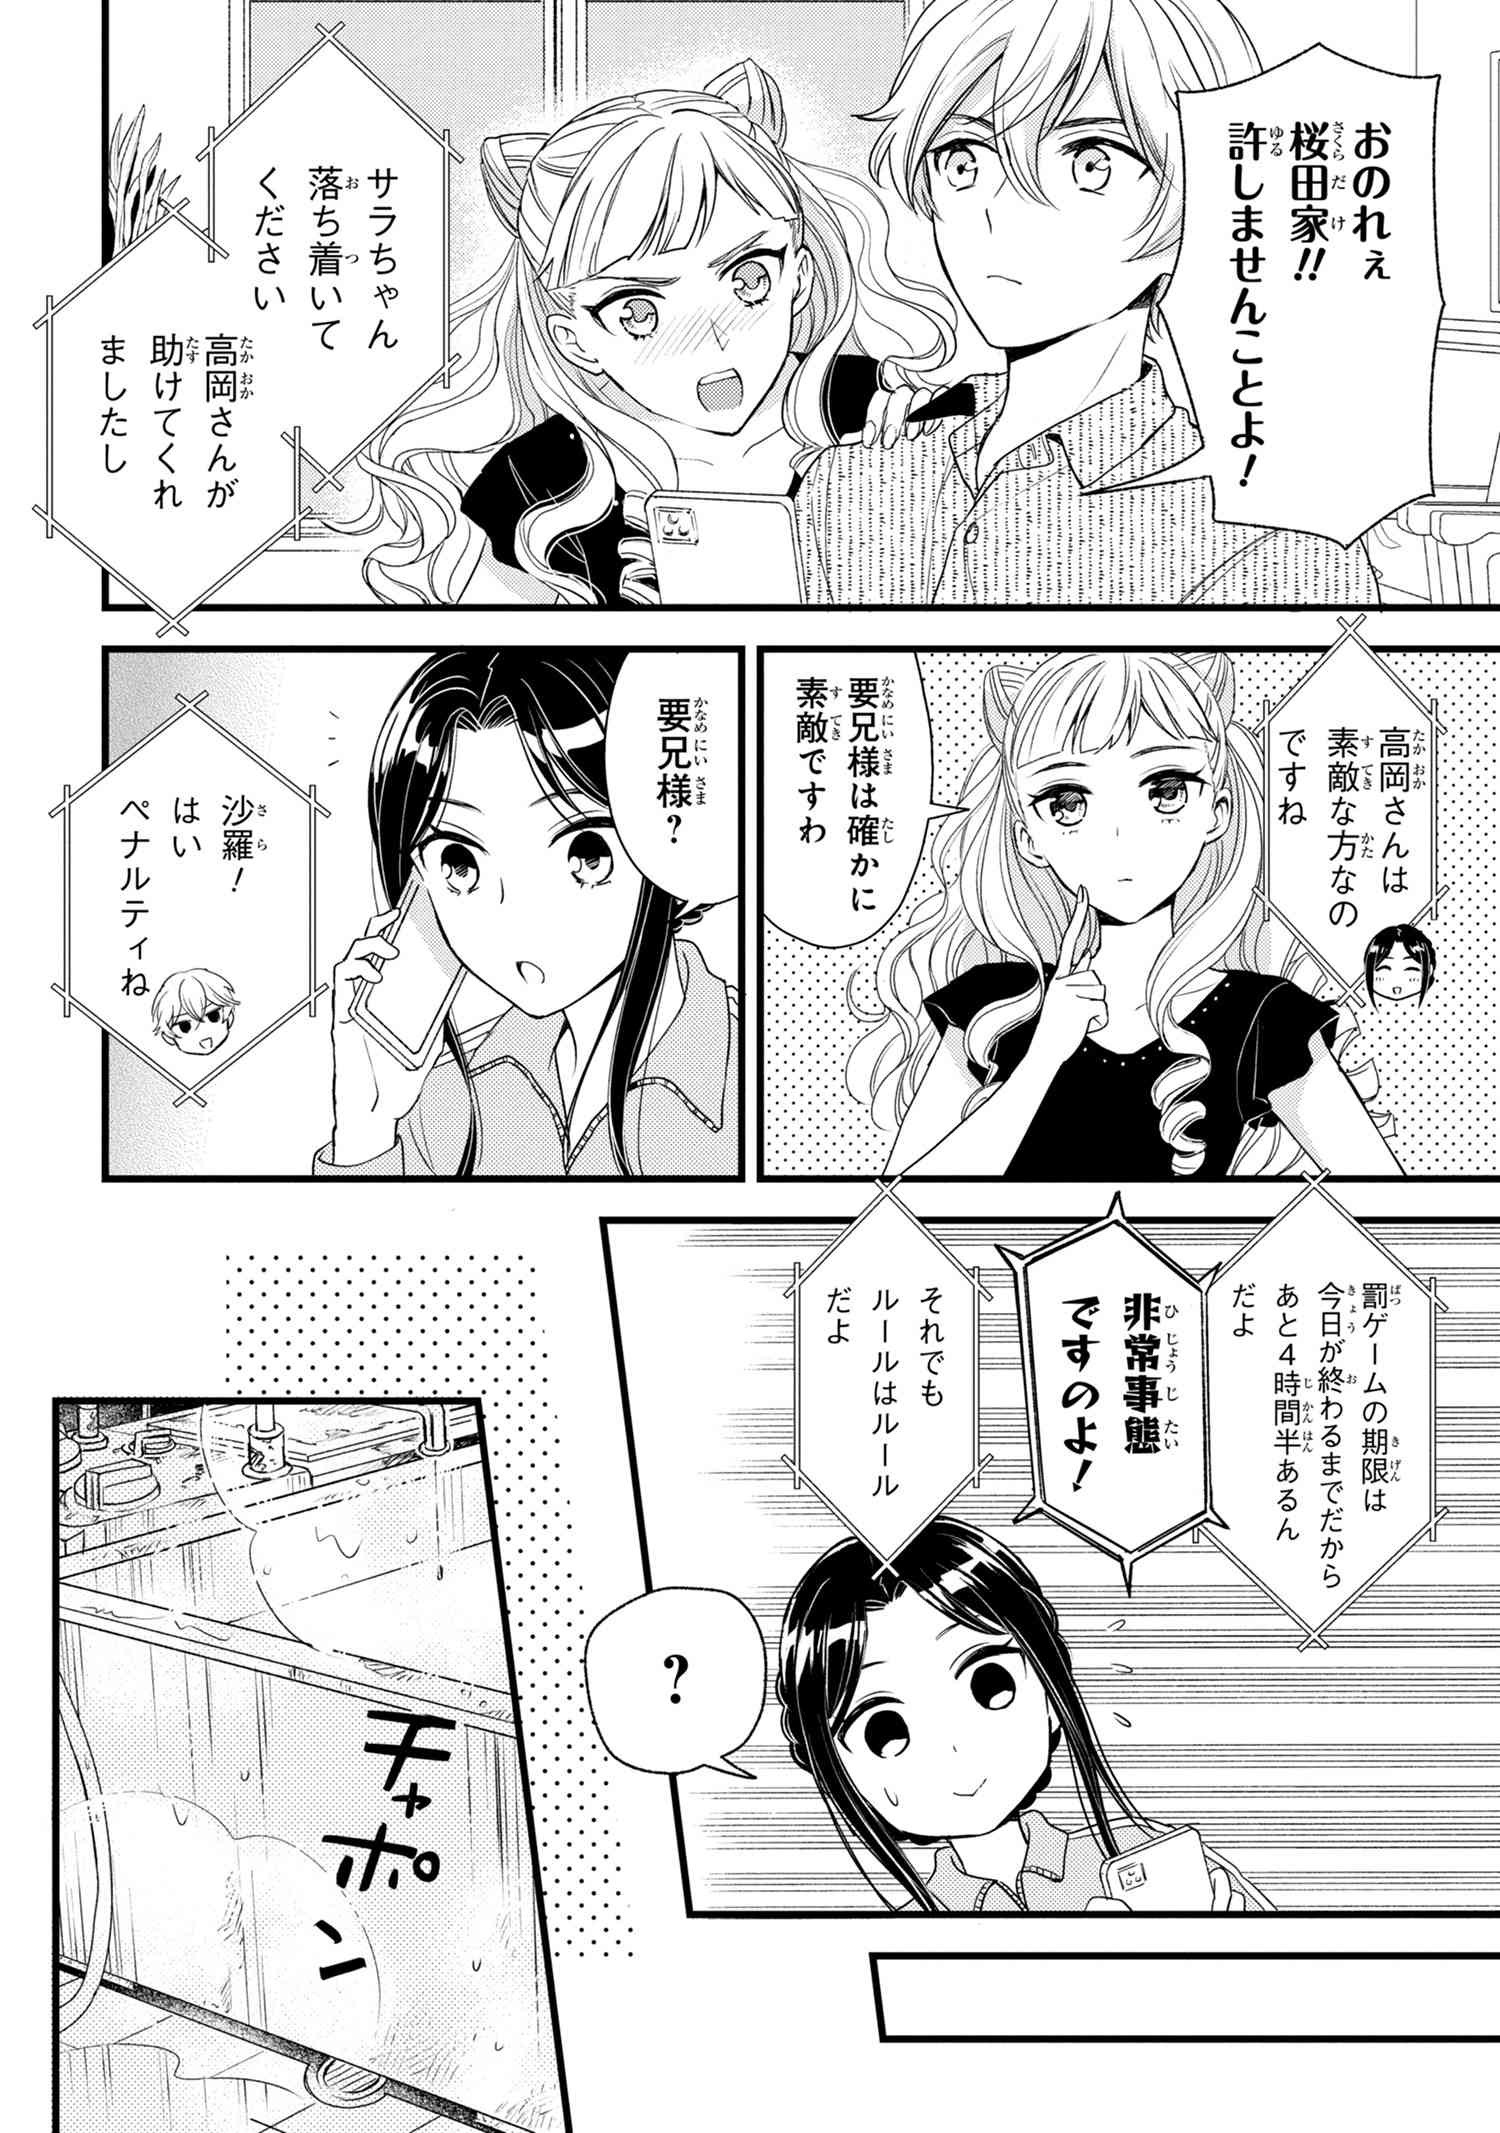 Reiko no Fuugi Akuyaku Reijou to Yobarete imasu ga, tada no Binbou Musume desu - Chapter 6-2 - Page 6